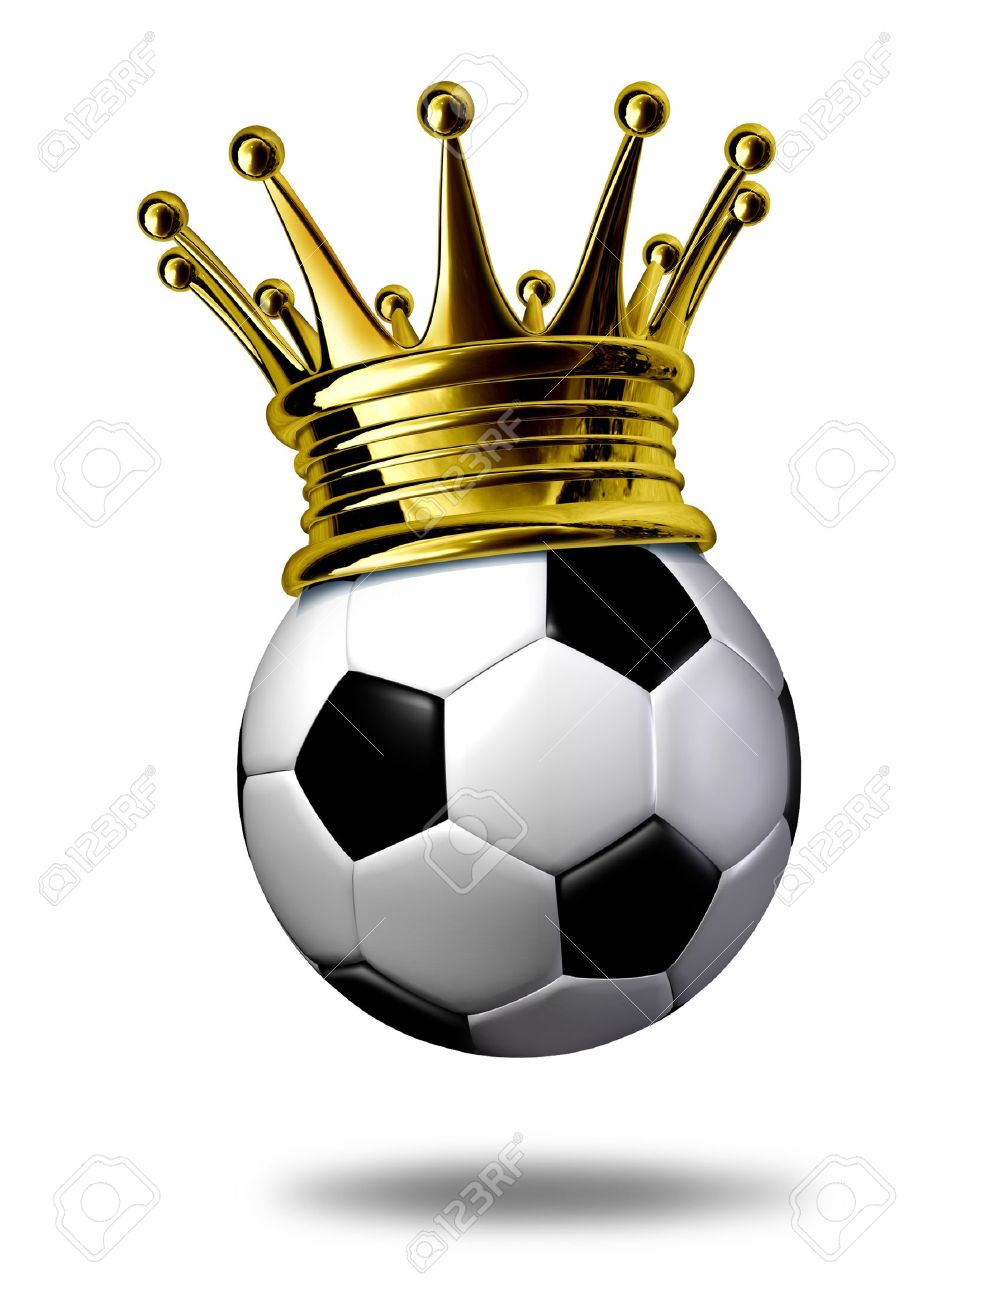 10892107 Football champion symbole repr sent par une couronne d or sur un ballon de football noir et blanc ou Banque dimages